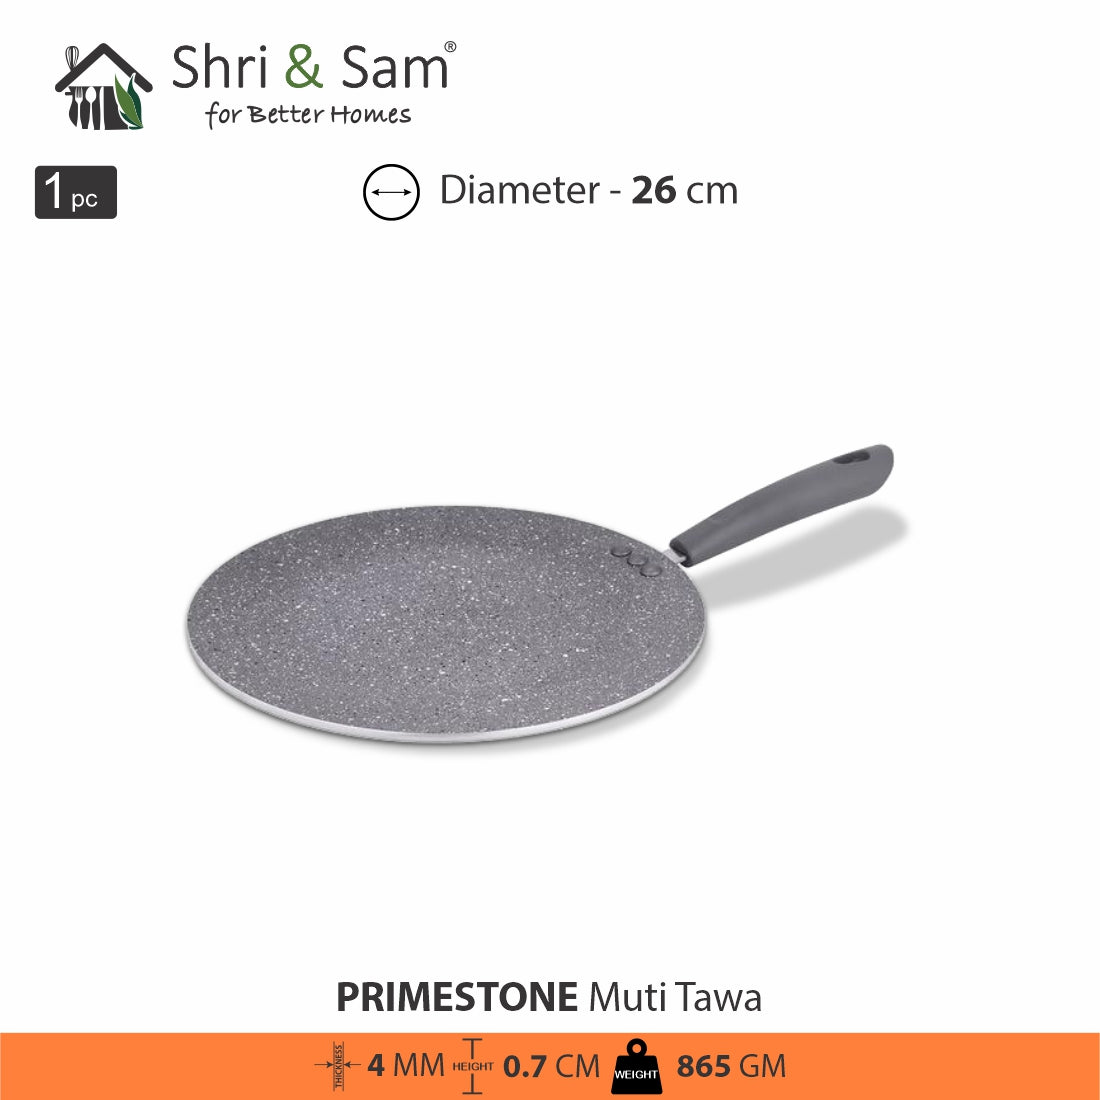 Aluminium Non-Stick Multi Tawa Primestone